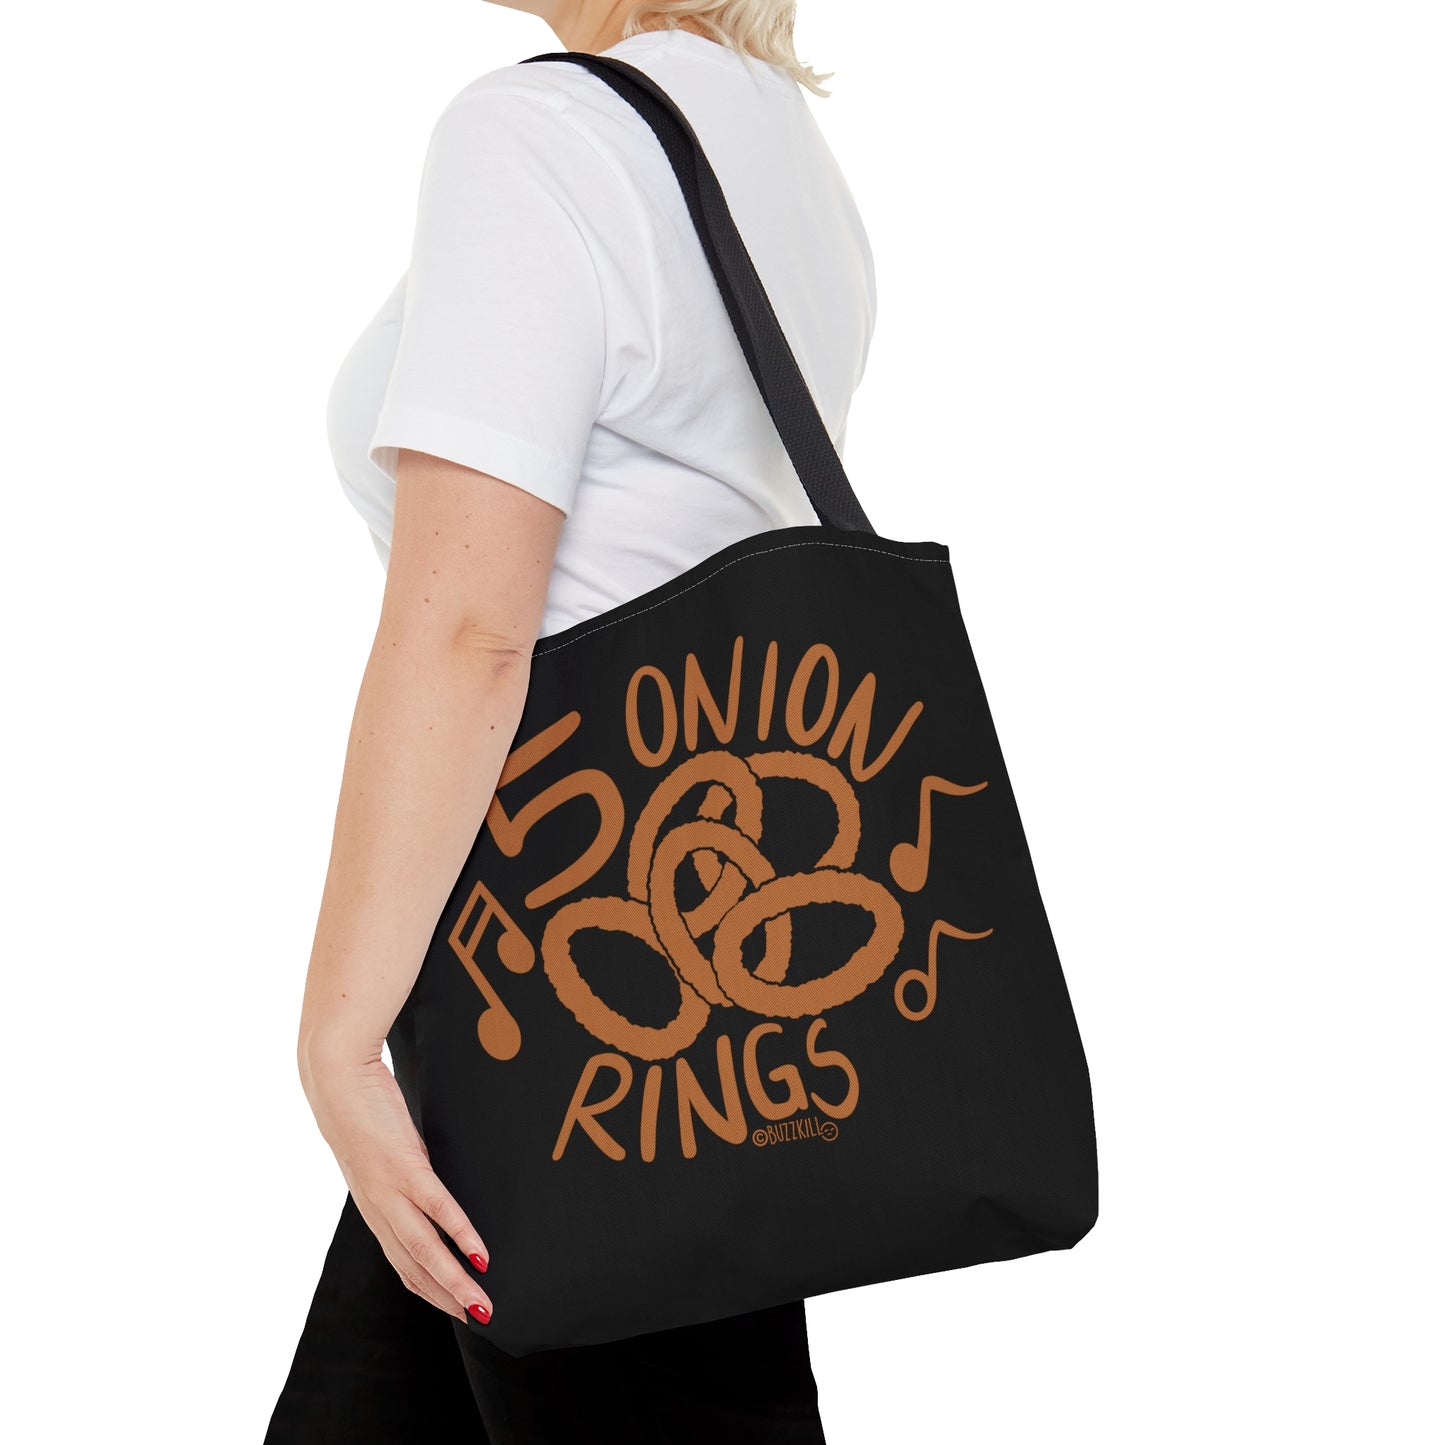 5 Onion Rings - Tote Bag